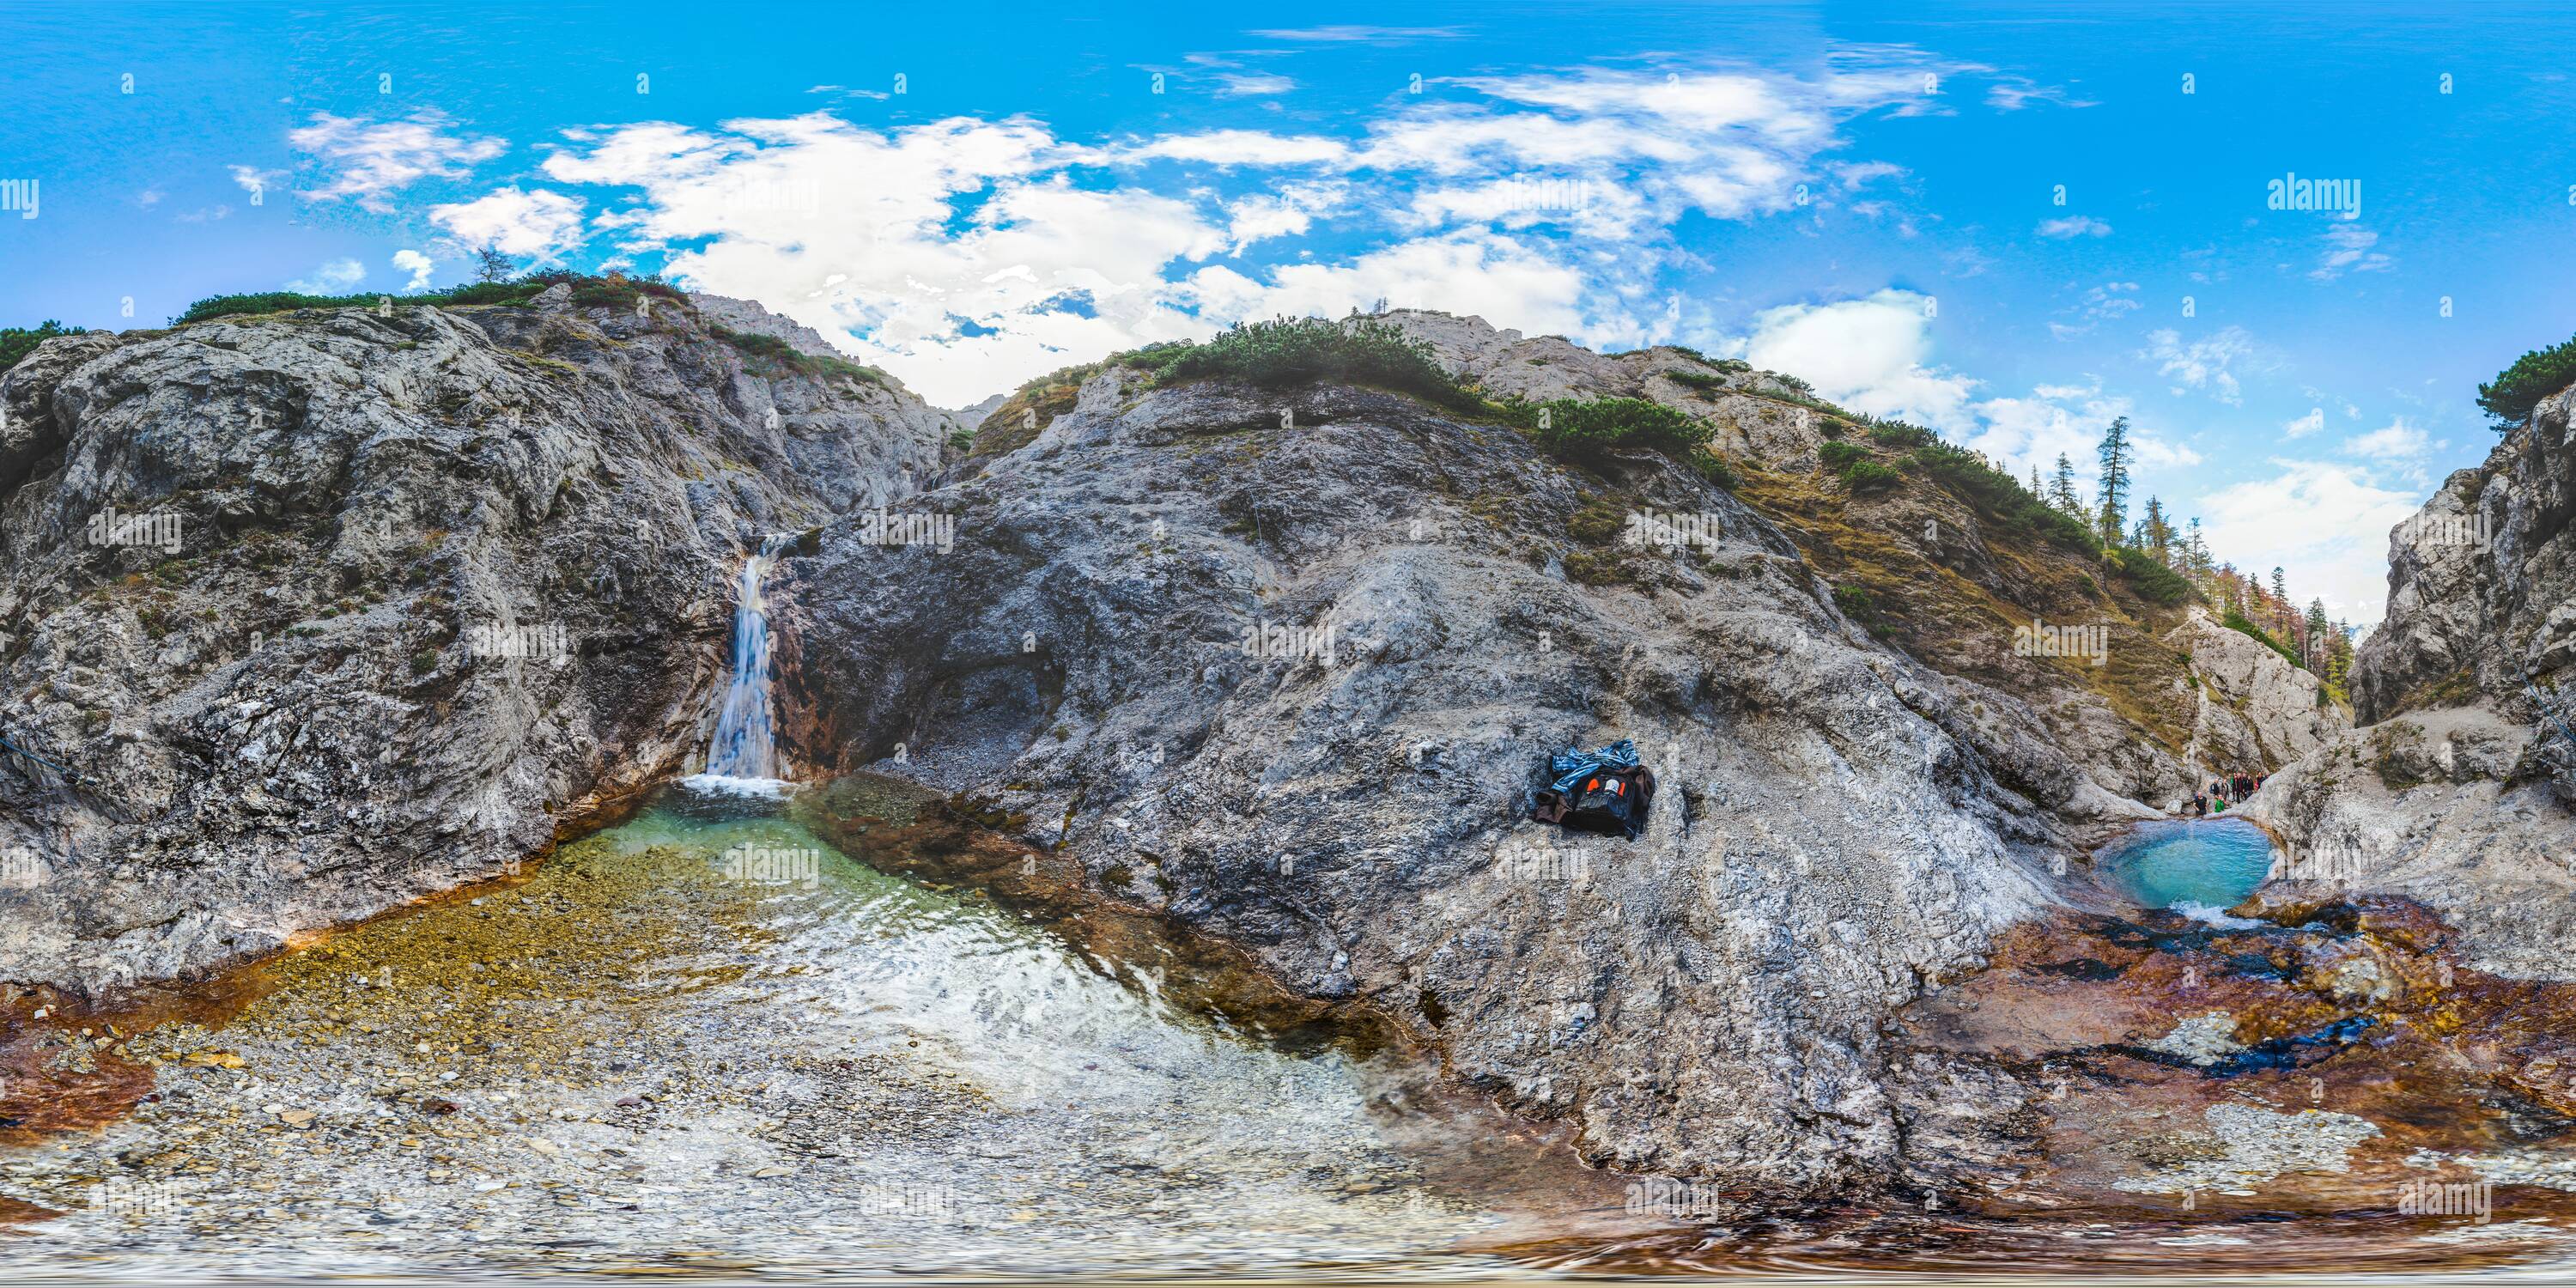 360 degree panoramic view of Wasserfall beim Stoderer Dolomitensteig